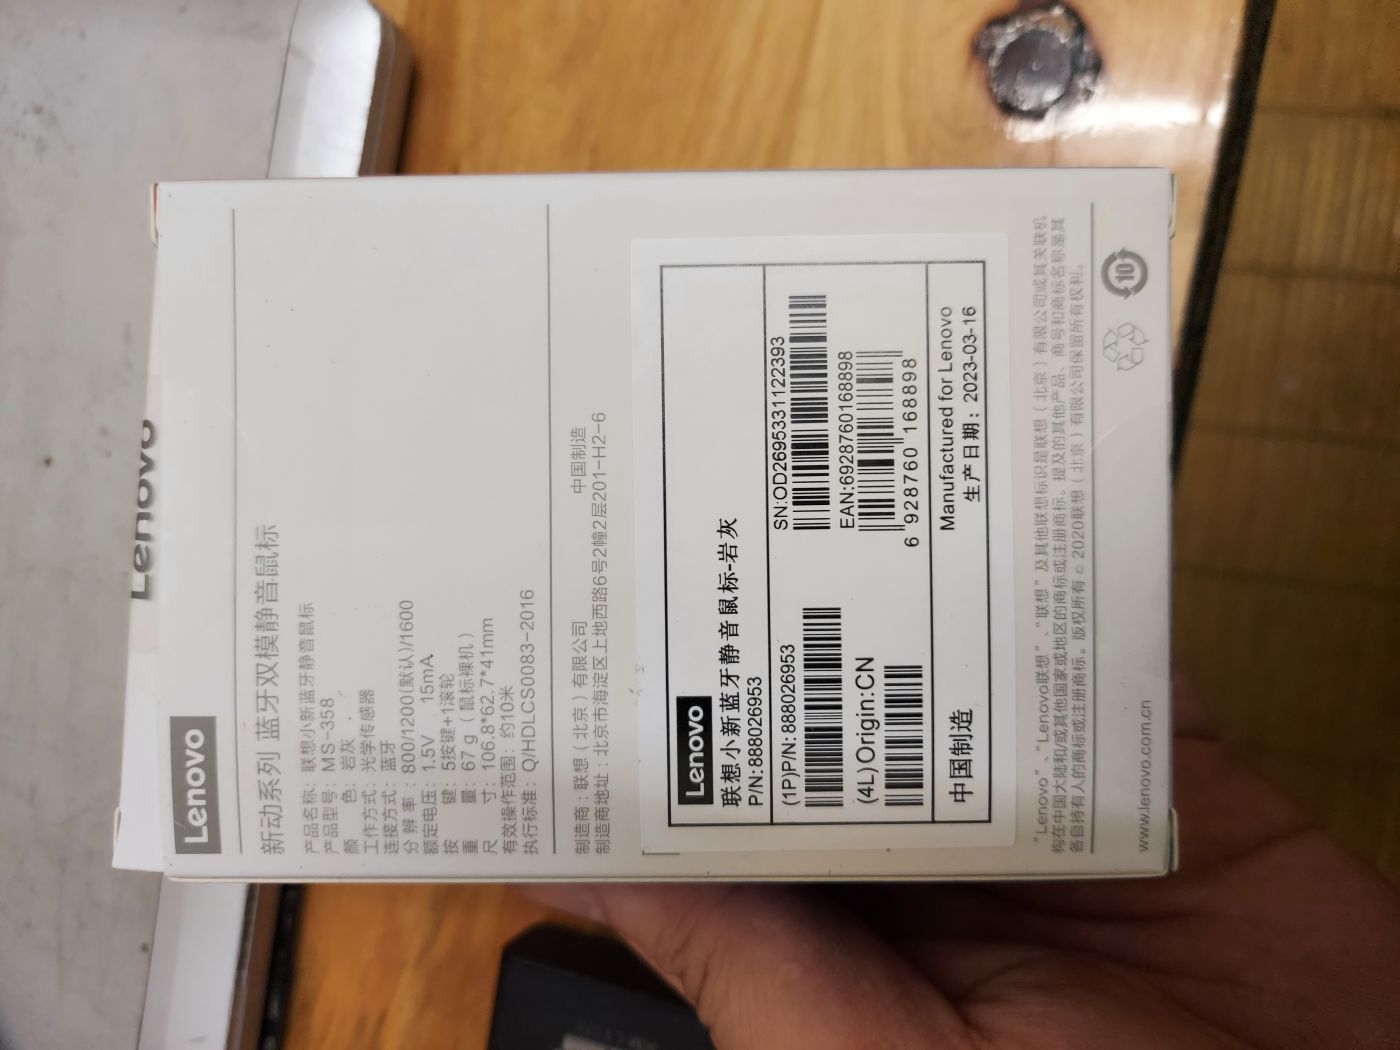 Chuột không dây Lenovo Xiaoxin M1 Bluetooth 5.0 (dùng pin AA) (chỉ còn màu grey)